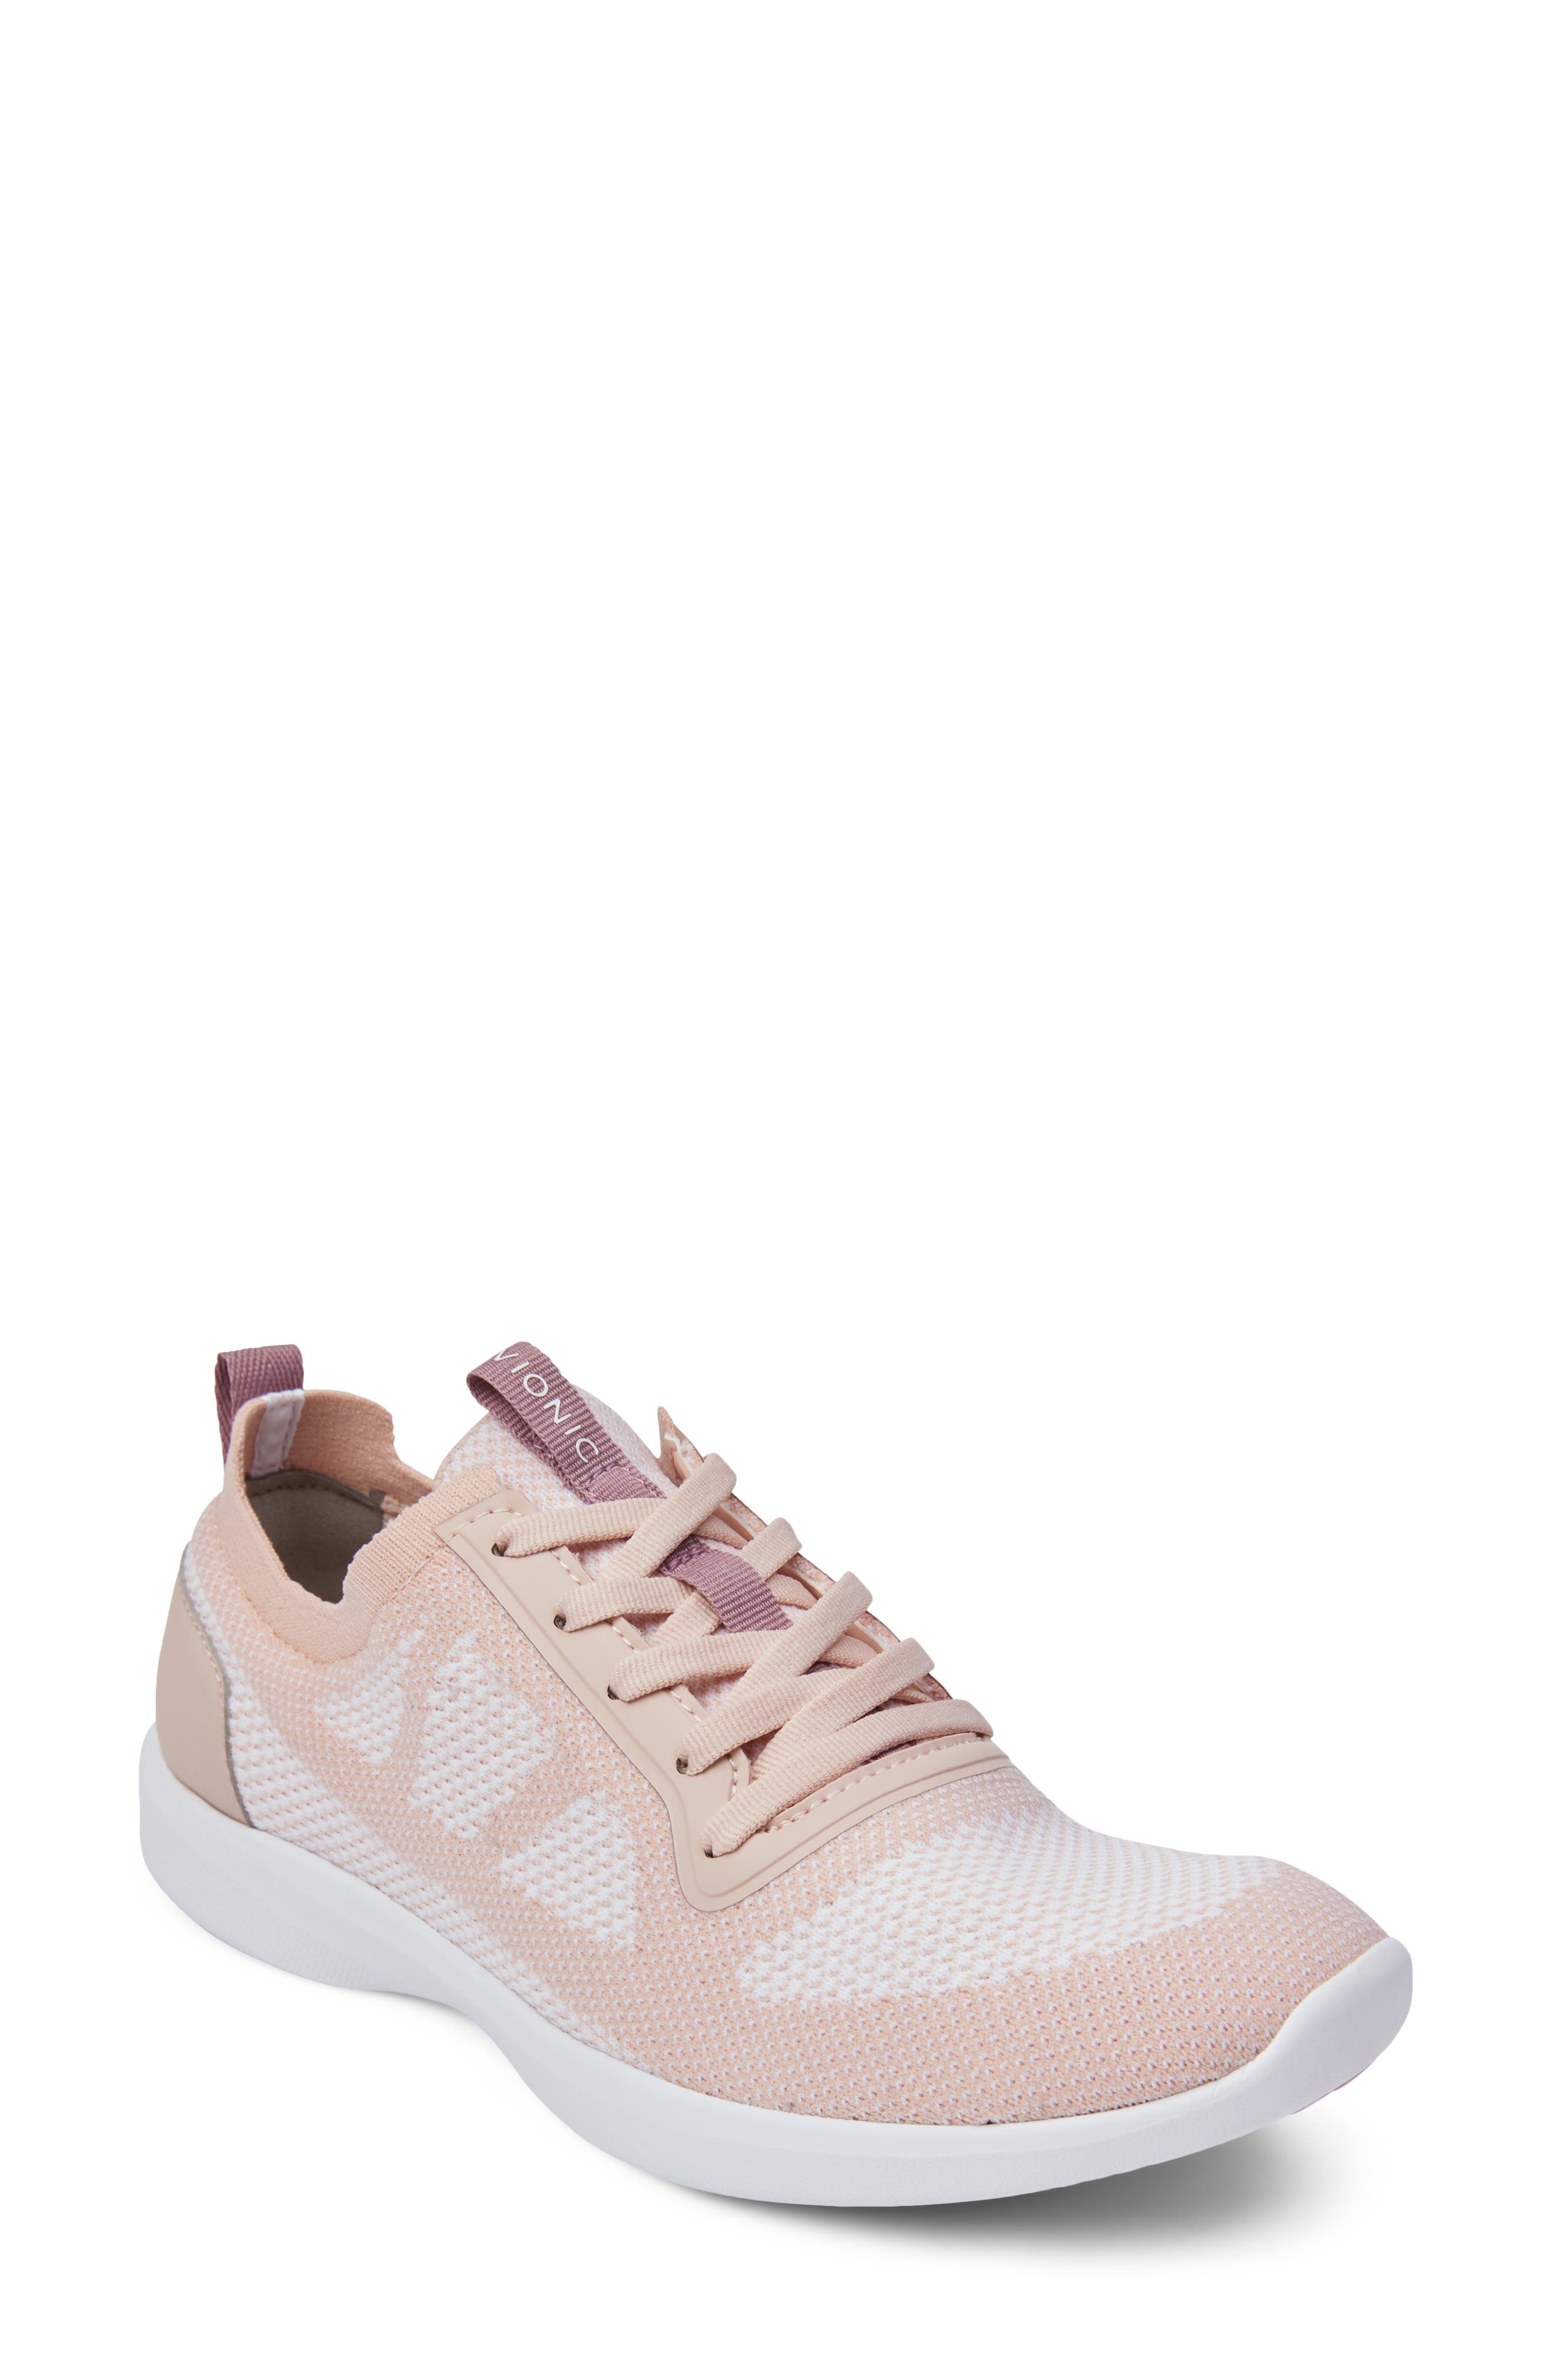 vionic white tennis shoes